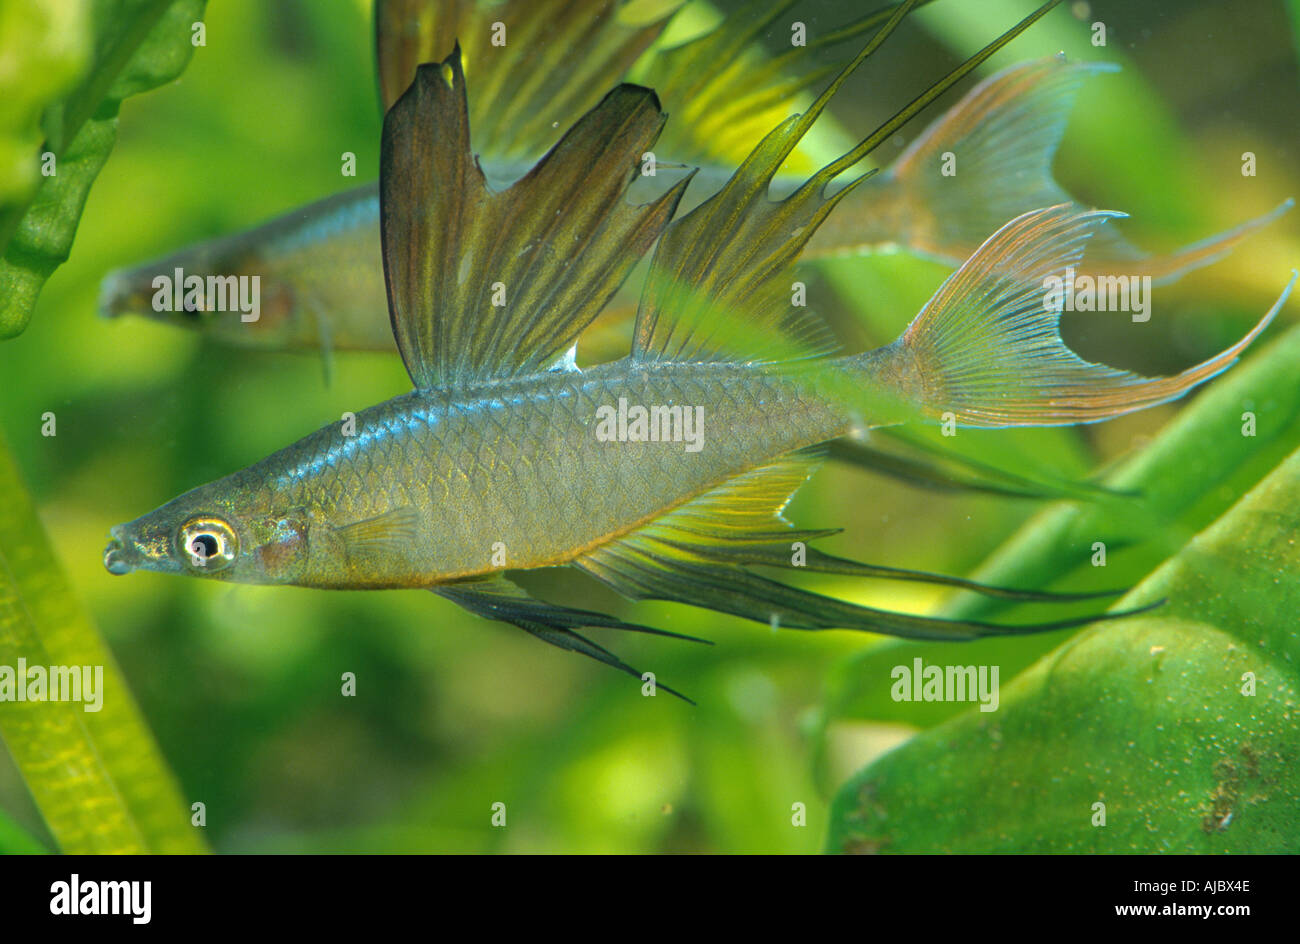 threadfin rainbowfish (Iriatherina werneri), swimming, side view Stock Photo